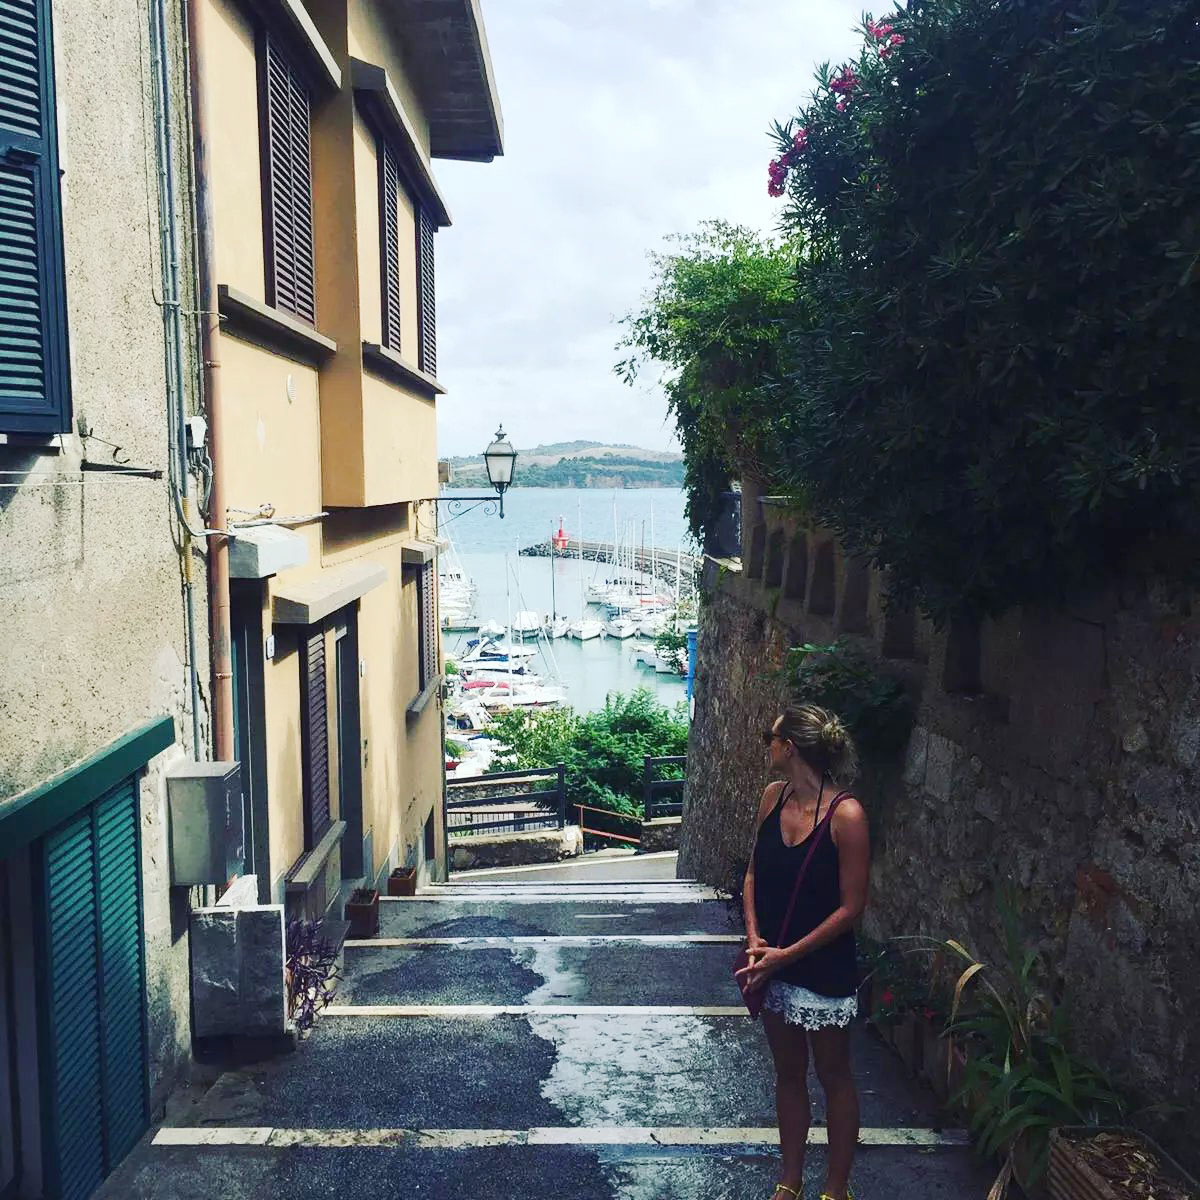 Talamone, Tuscany, Italy on Emma Eats & Explores